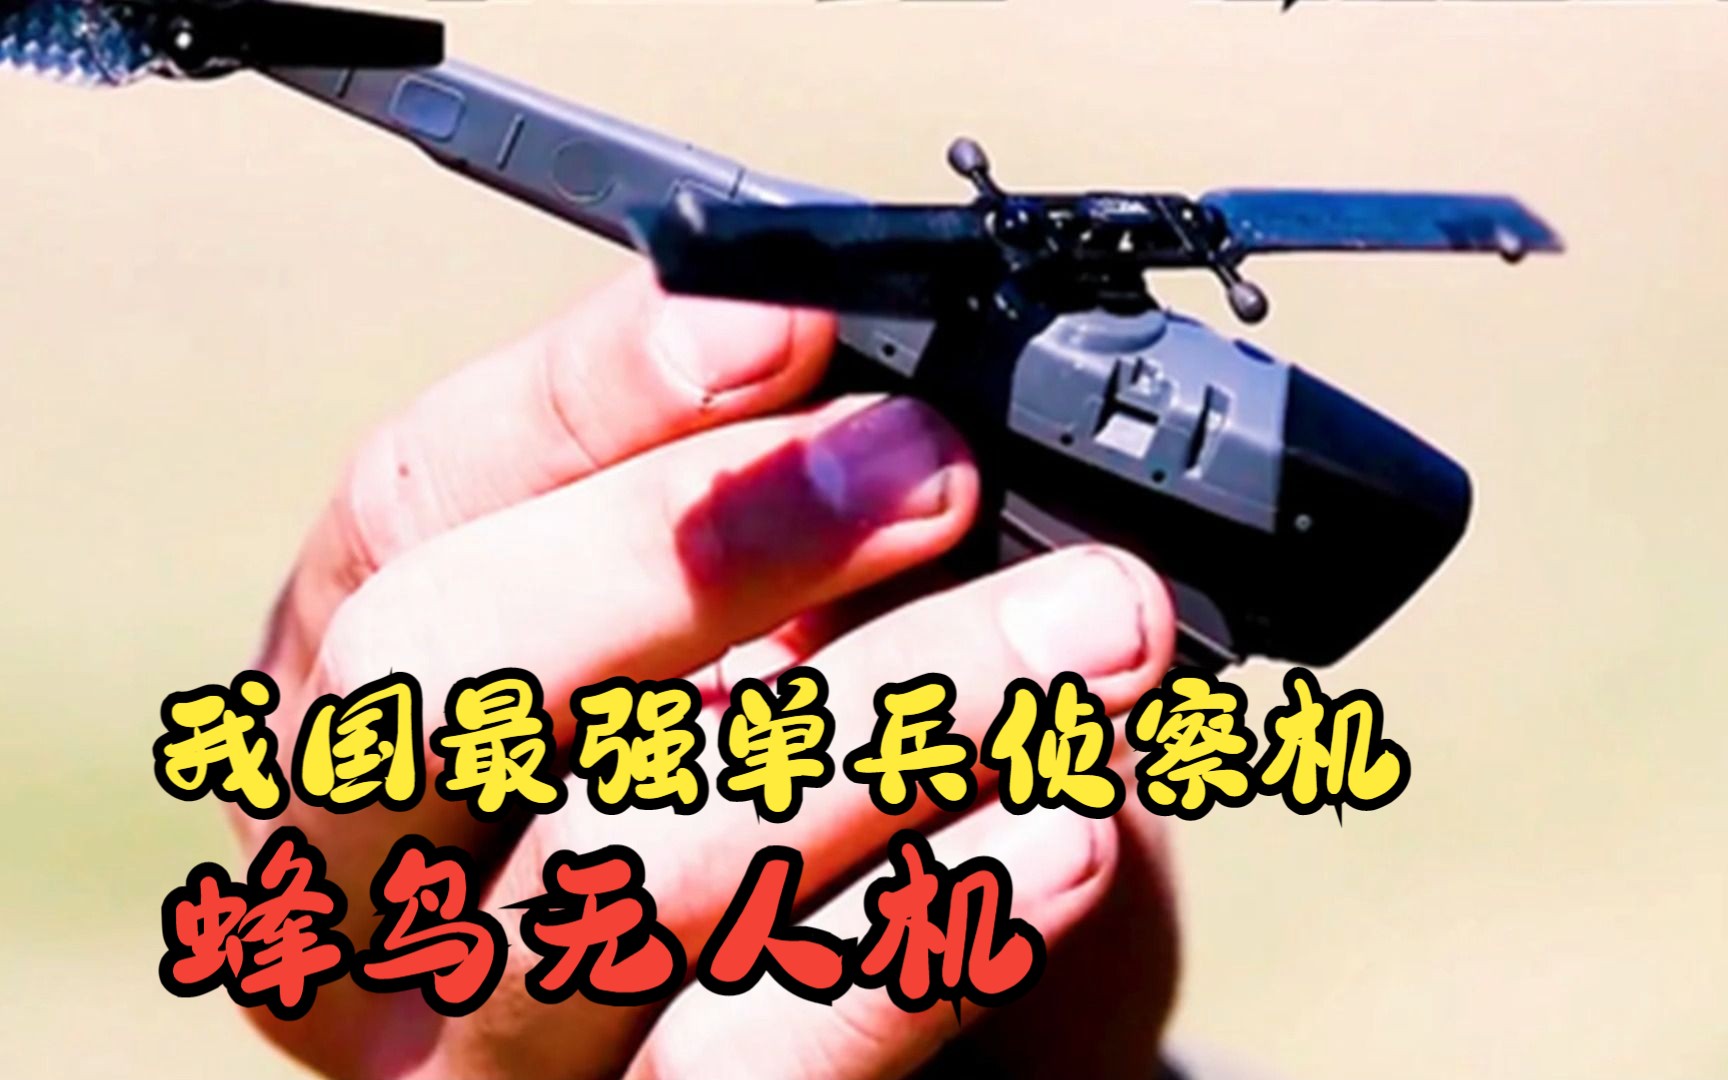 蜂鸟军用小型无人机图片